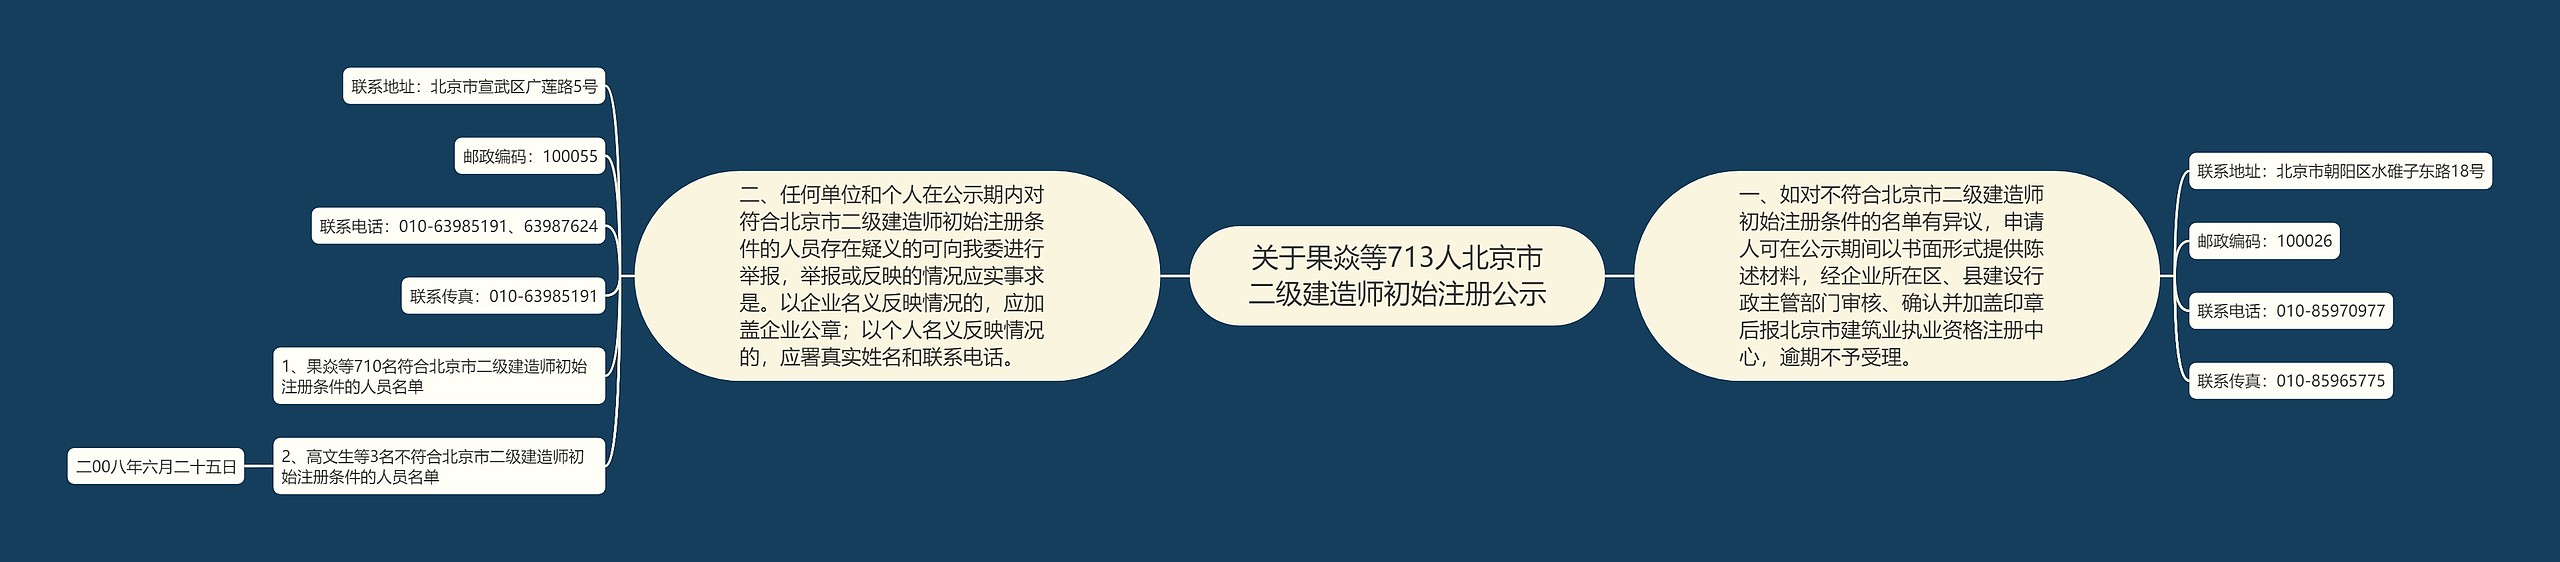 关于果焱等713人北京市二级建造师初始注册公示